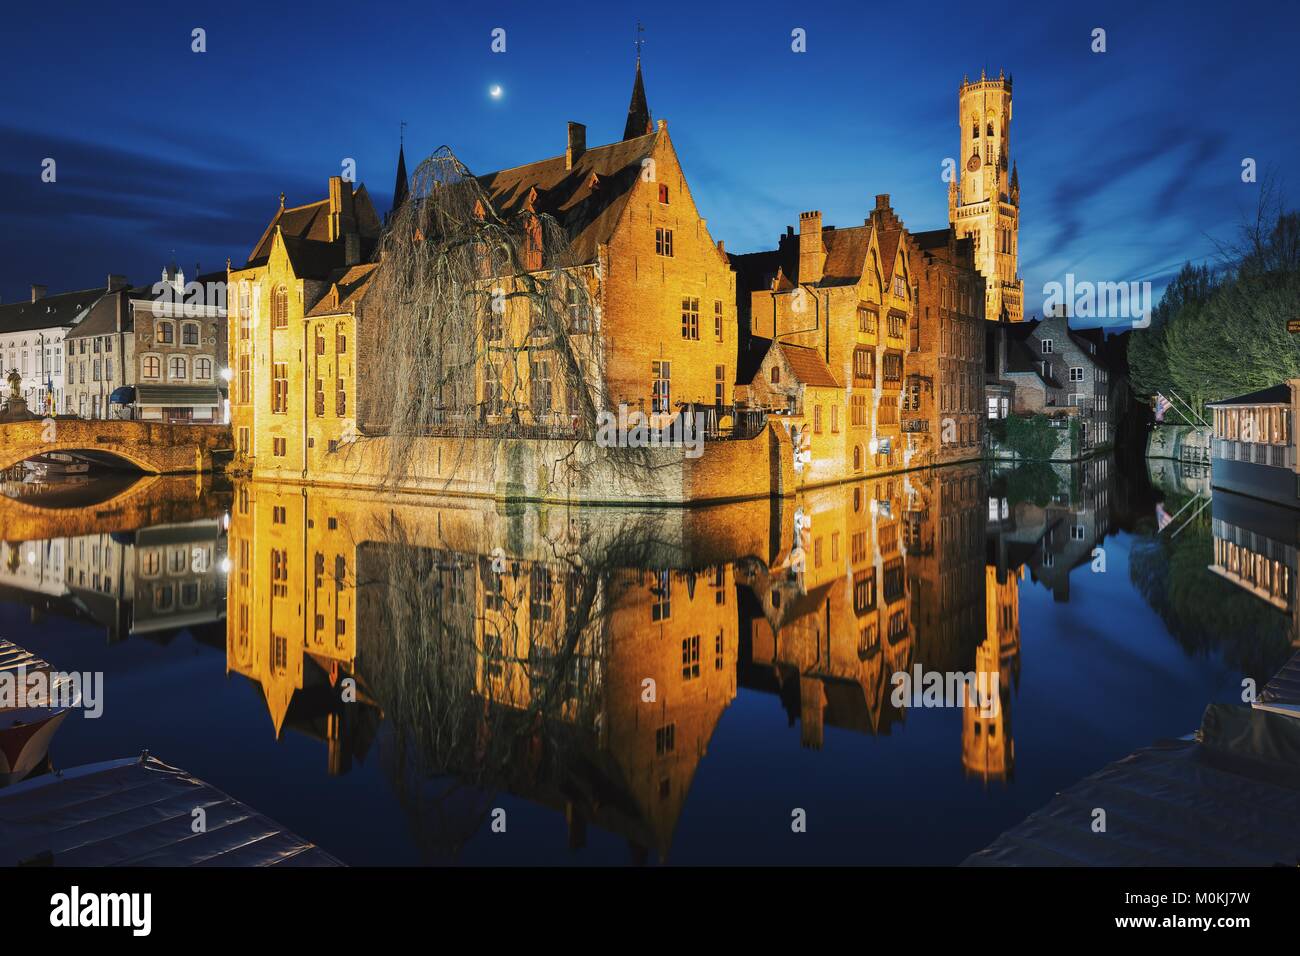 L'affichage classique du centre-ville historique de Bruges, avec célèbre Rozenhoedkaai allumé pendant le crépuscule magique, Flandre orientale, Belgique Banque D'Images